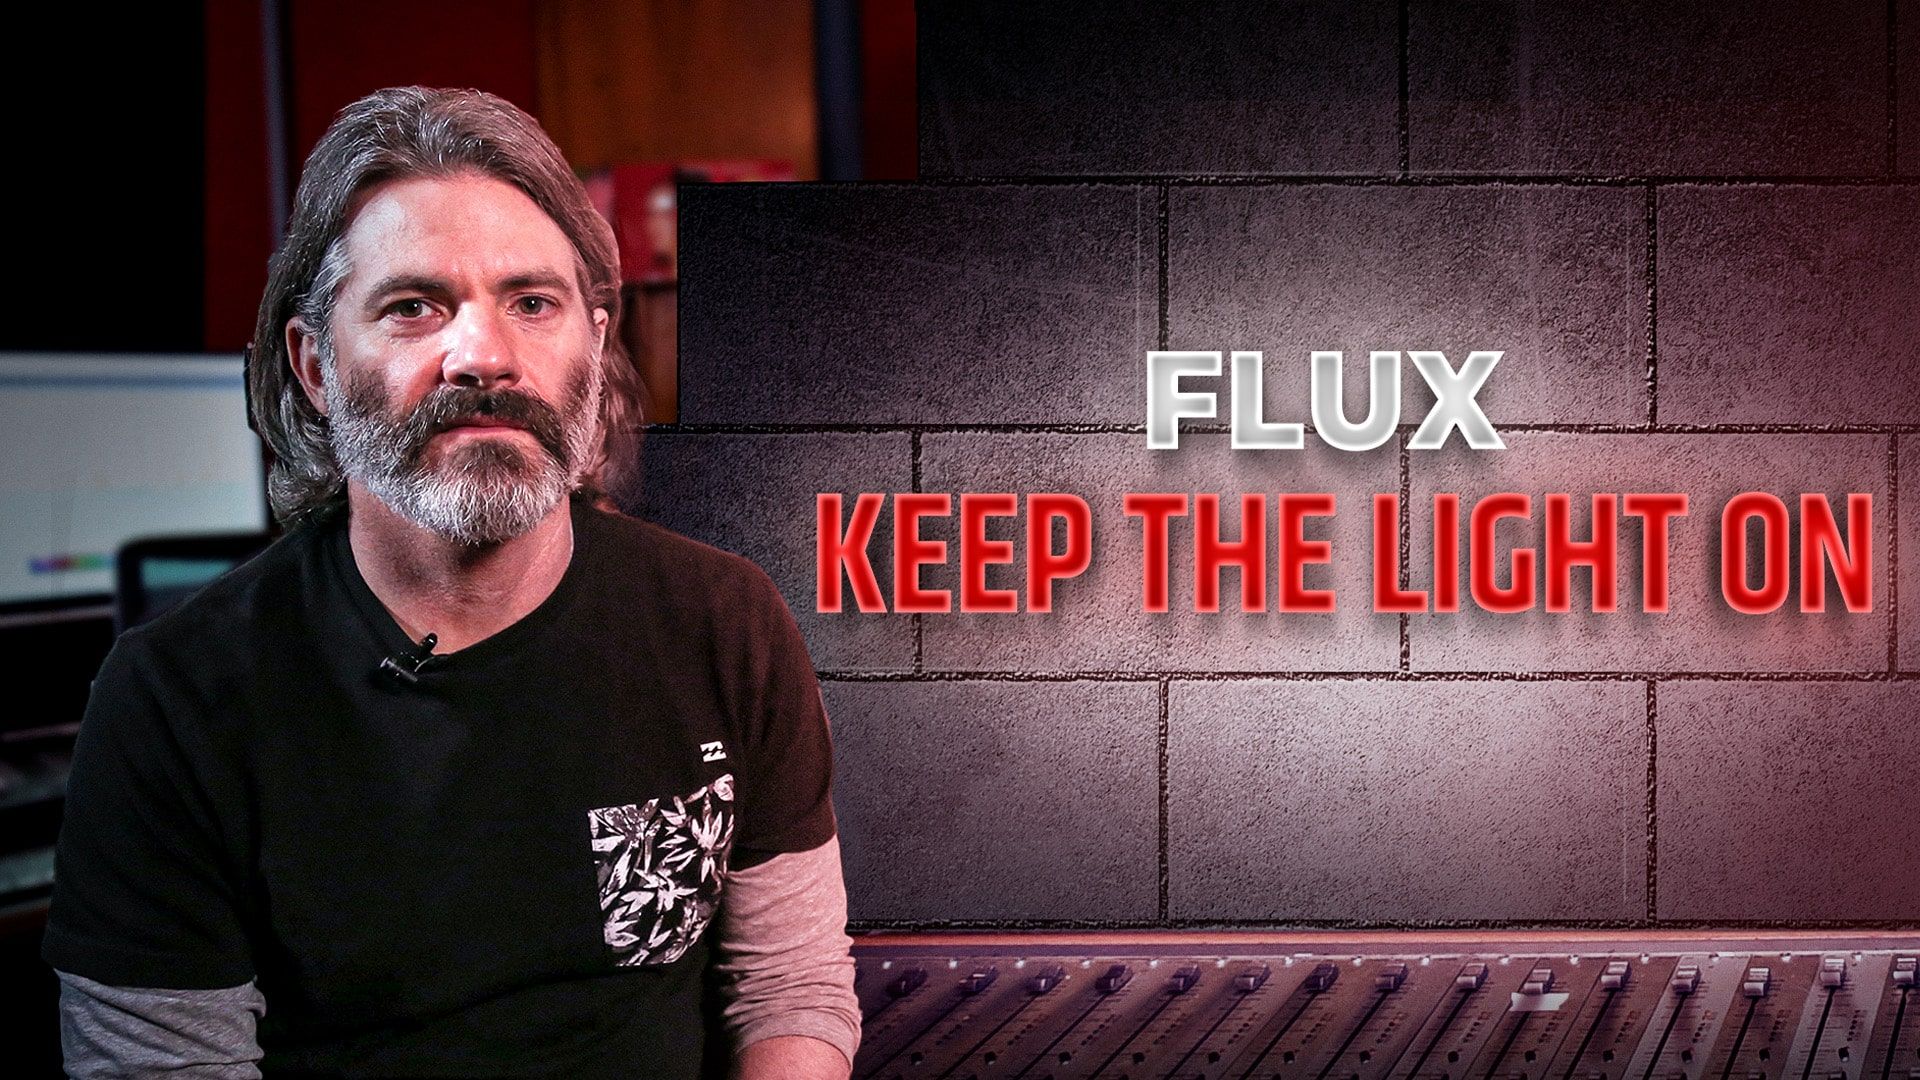 Flux keeps the light on